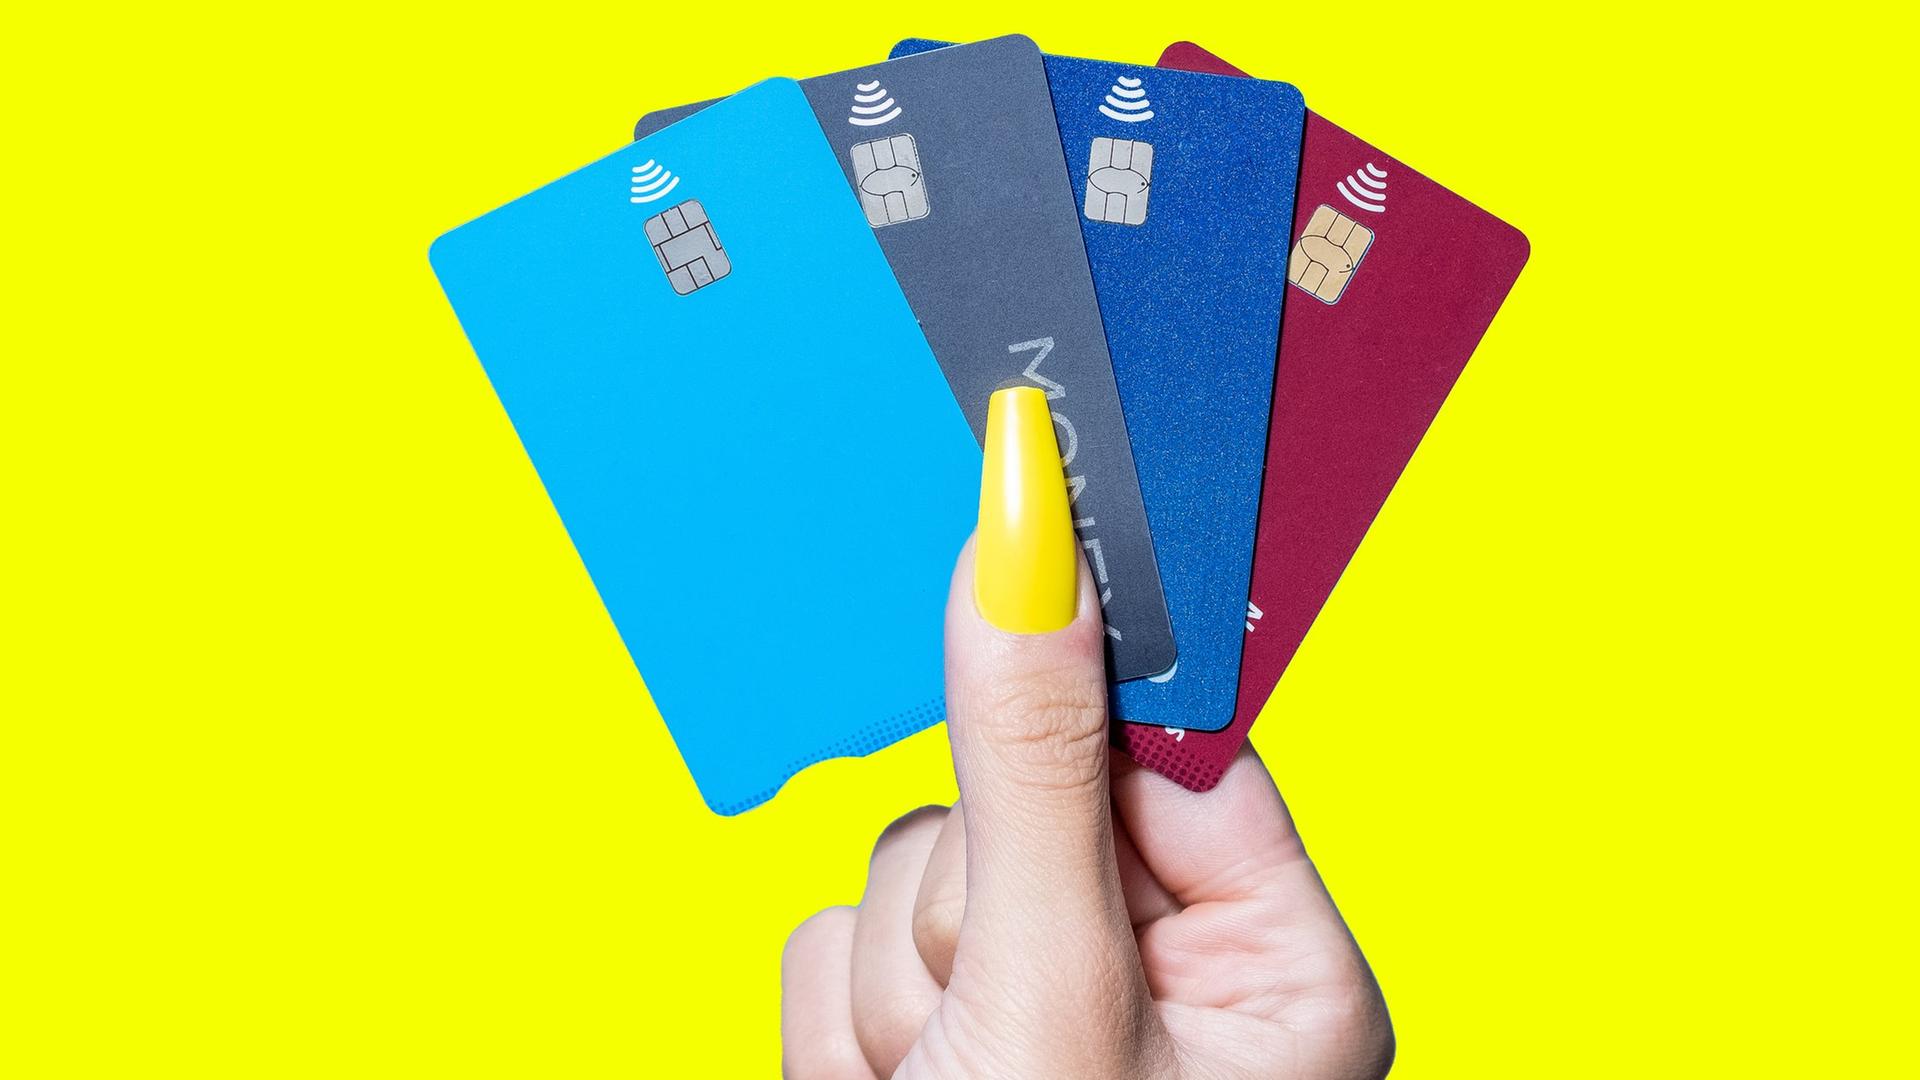 Mehrere Kreditkarten, die von einer Hand mit einem auffälligen gelben Fingernagel gehalten werden.